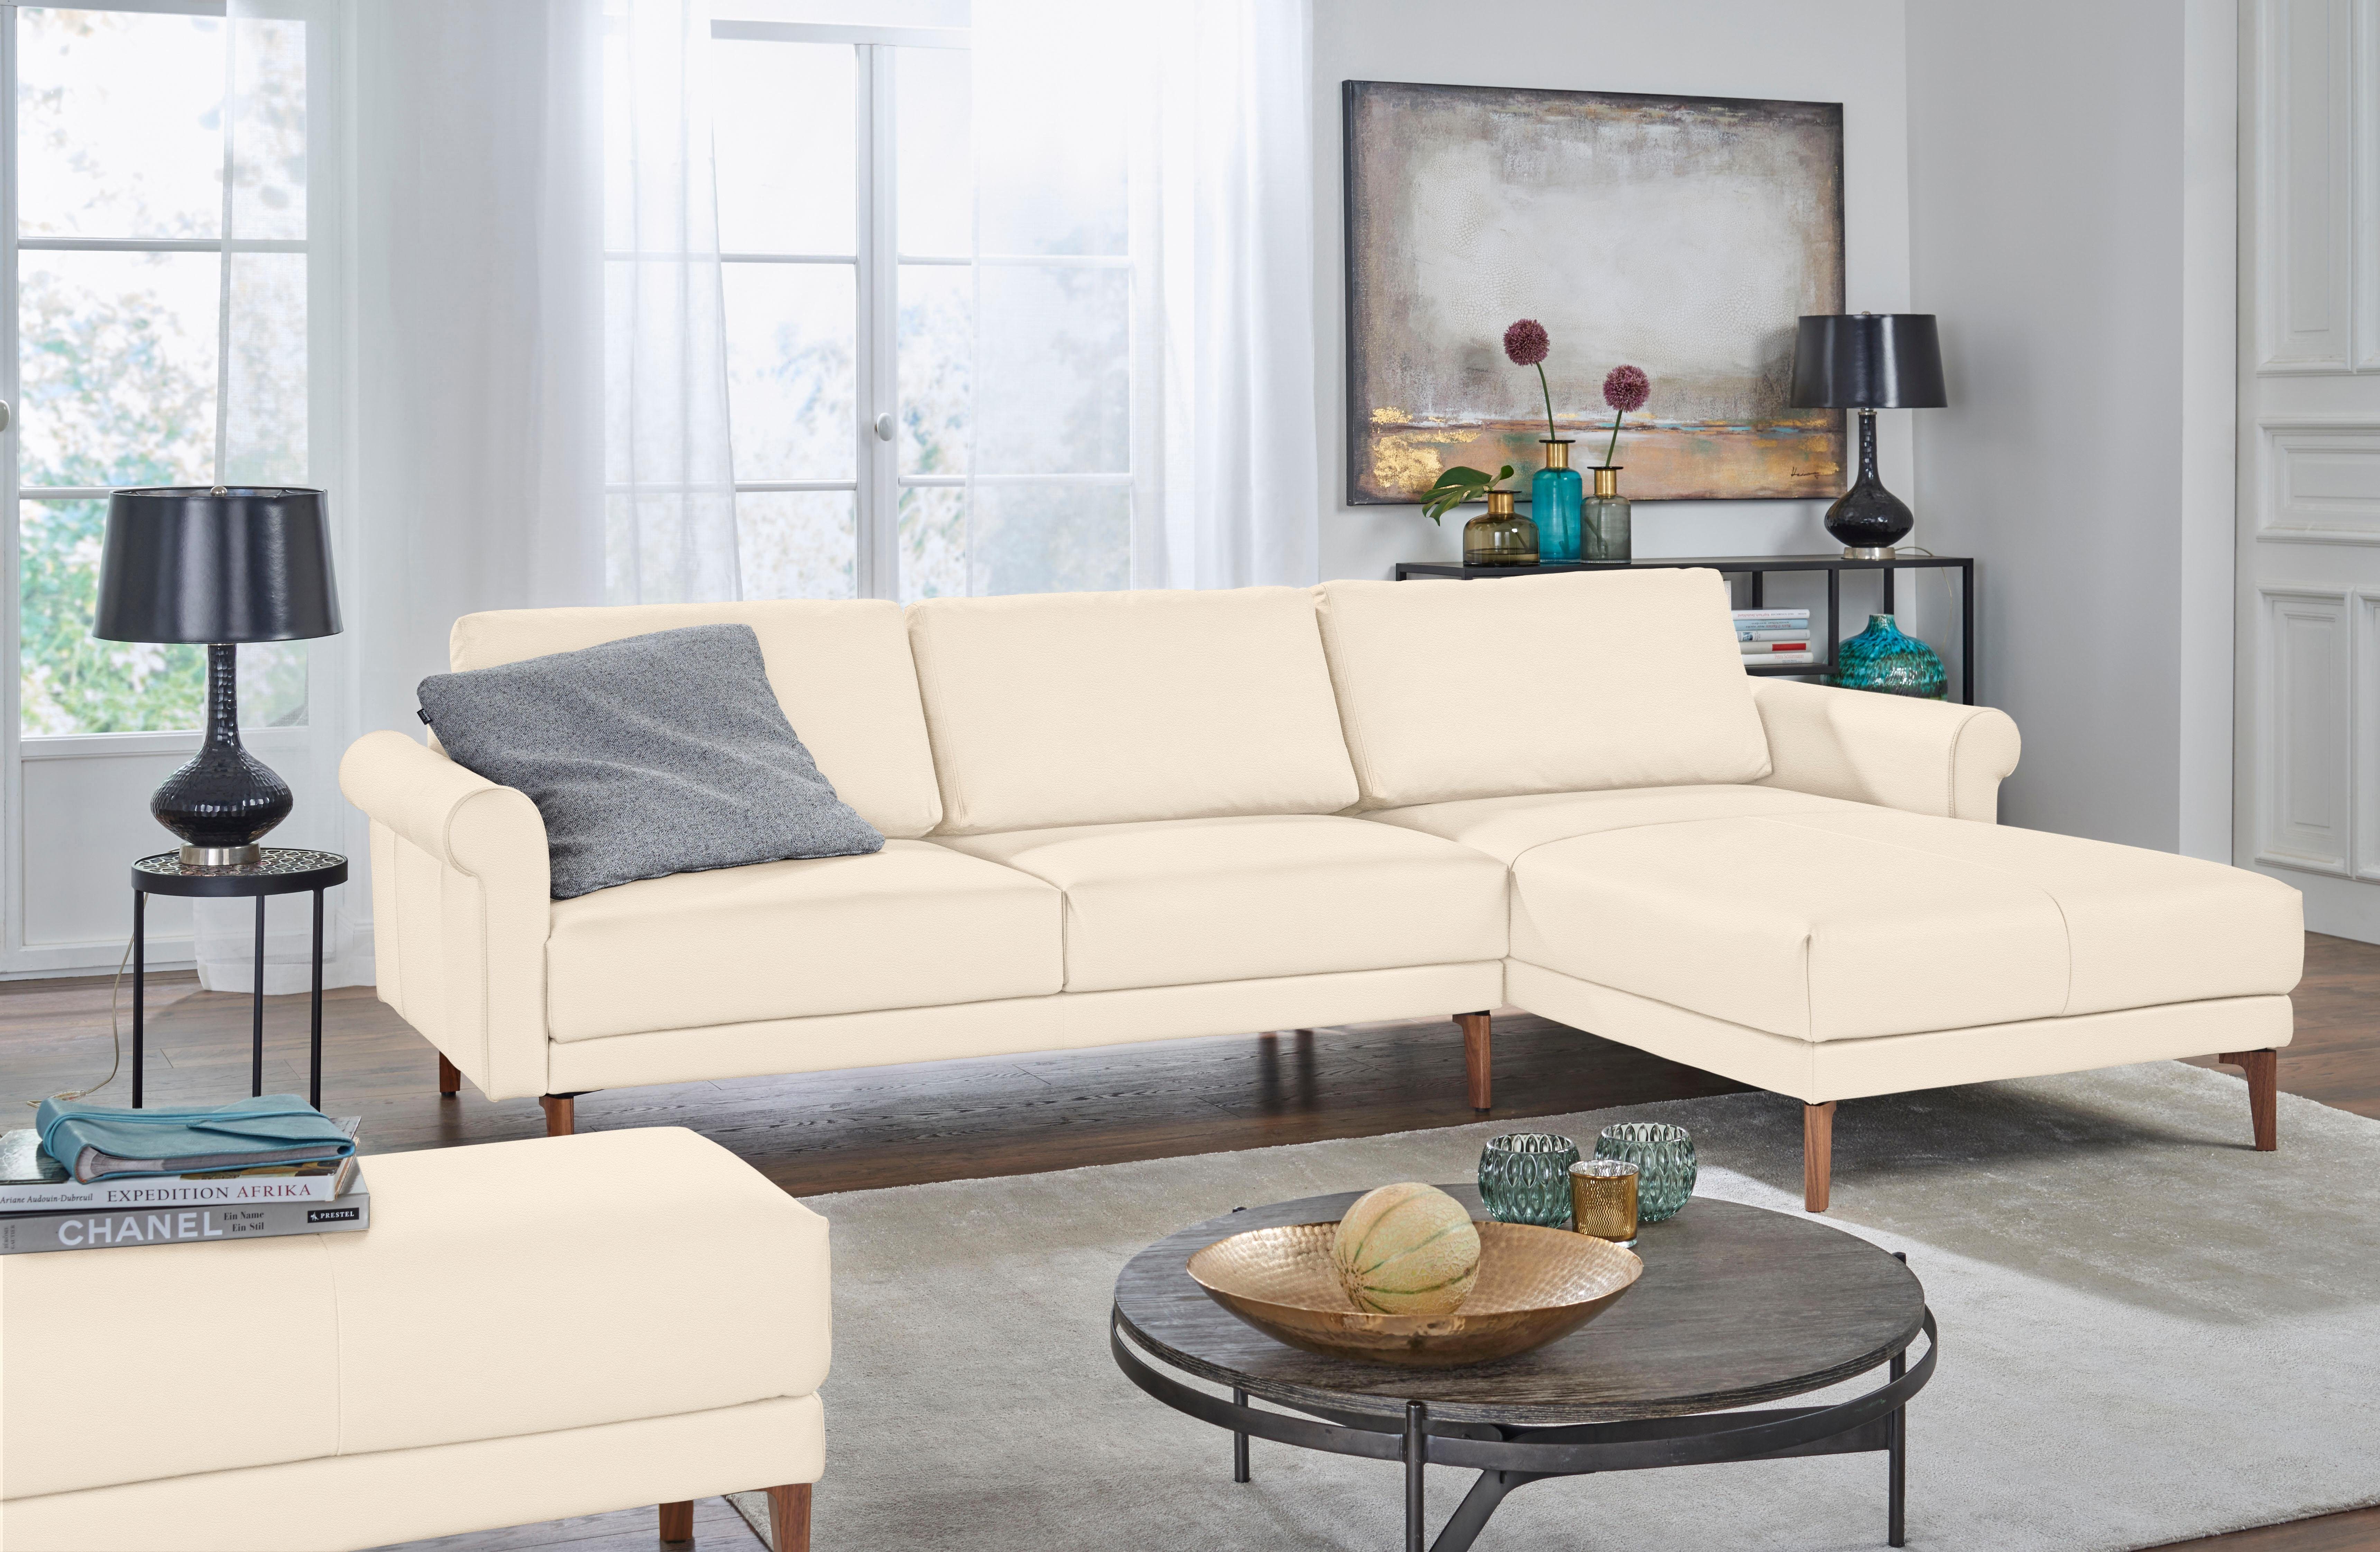 Armlehne sofa modern Ecksofa Nussbaum hs.450, hülsta Breite Fuß 282 cm, Schnecke Landhaus,